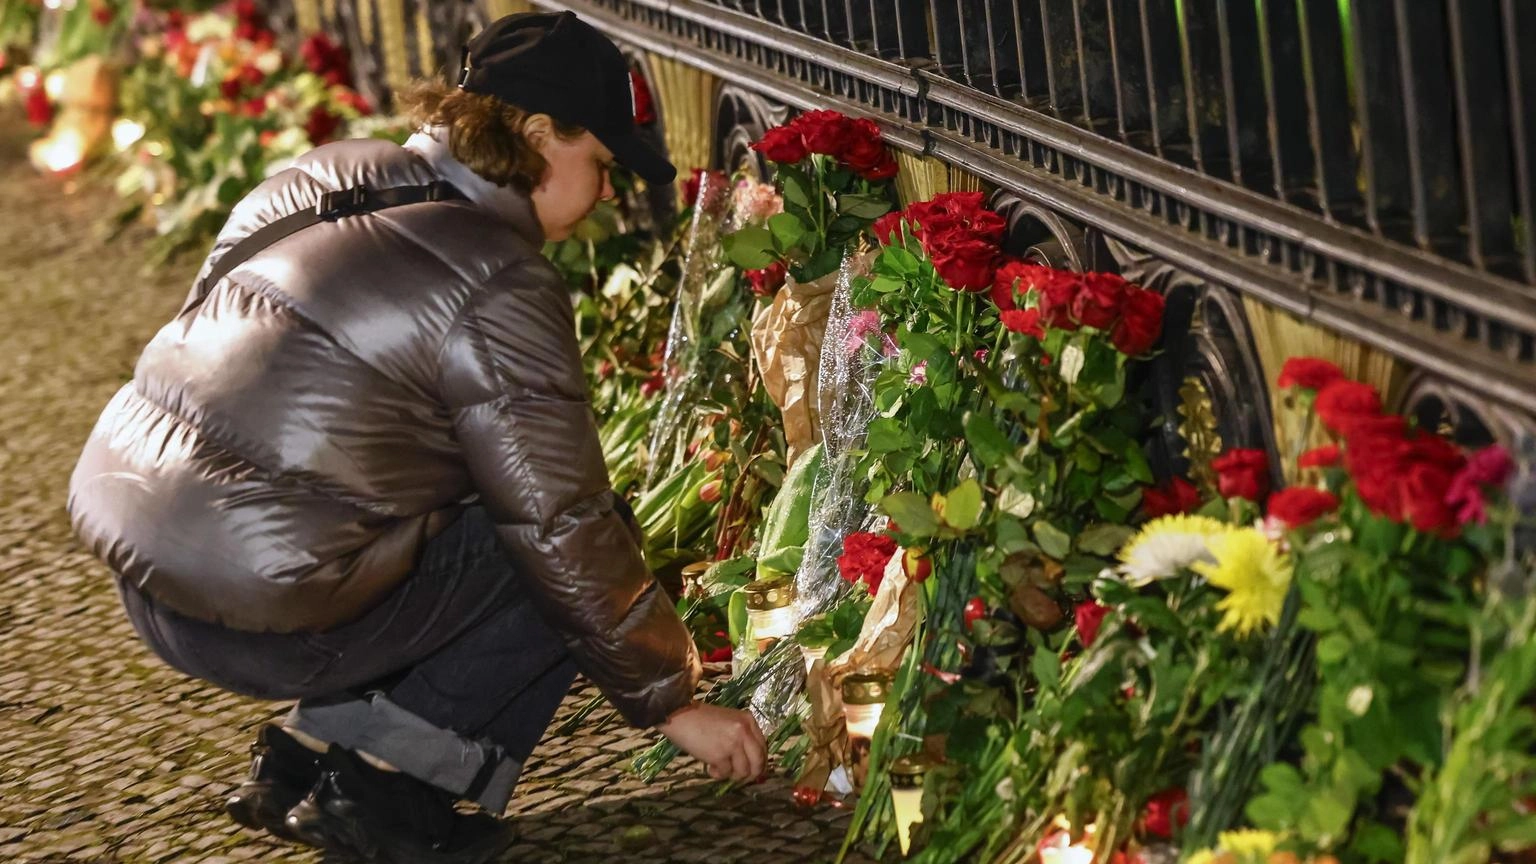 Strage Mosca, governo conferma 133 morti, i feriti sono 152